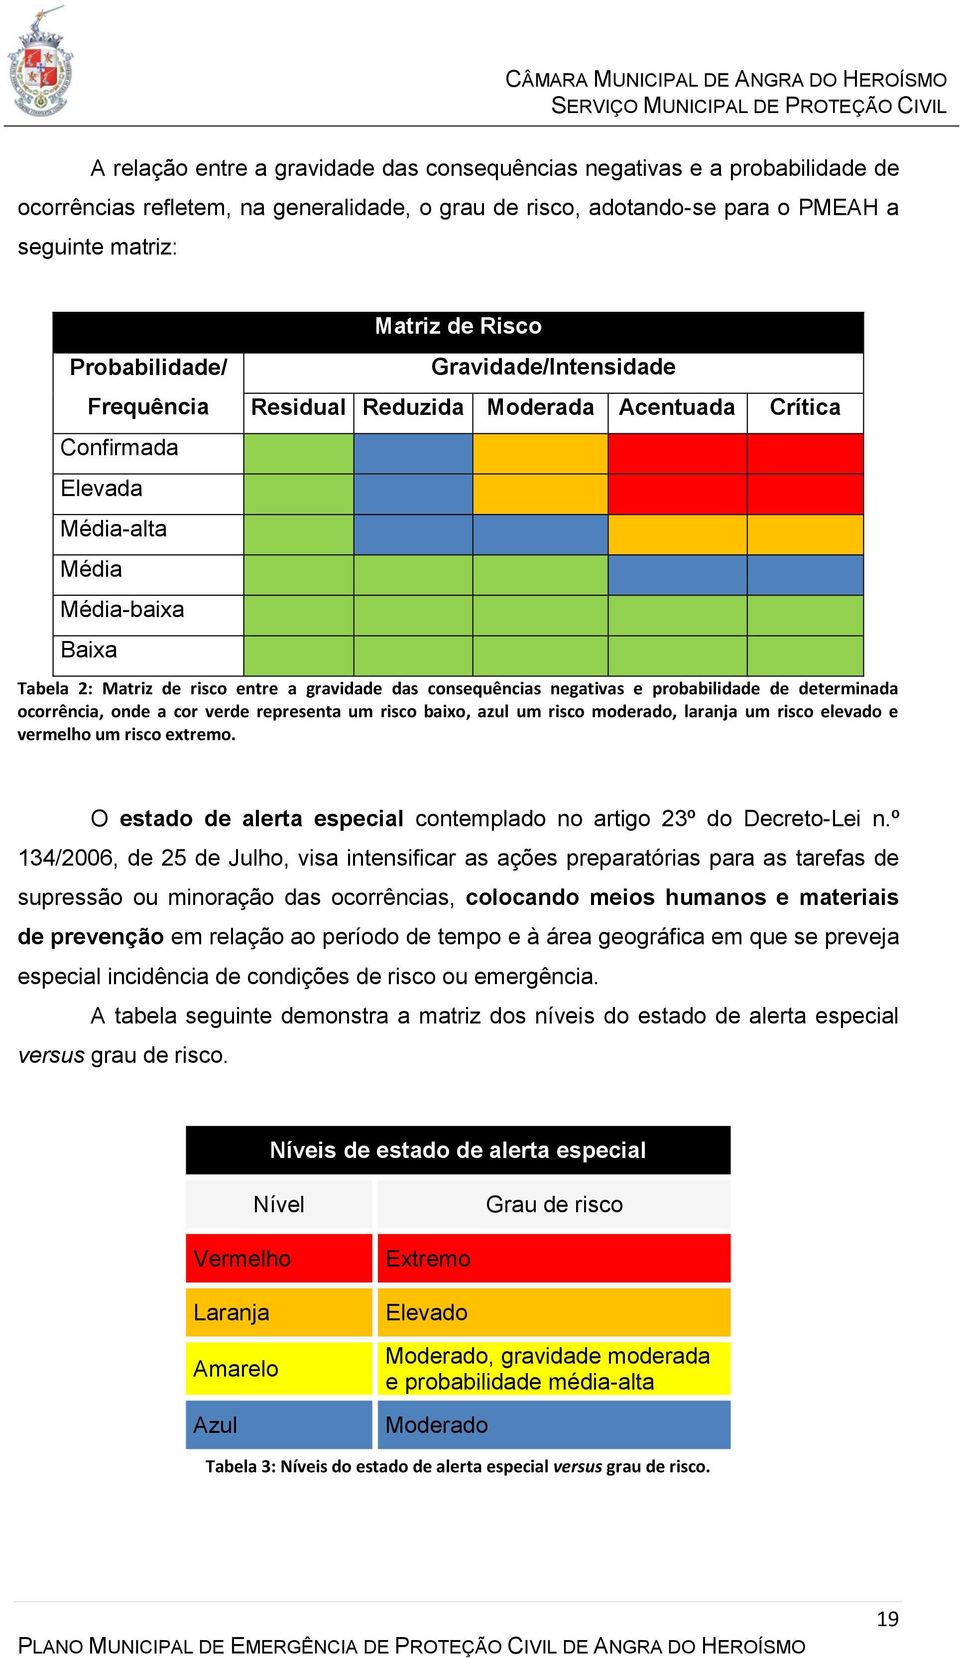 consequências negativas e probabilidade de determinada ocorrência, onde a cor verde representa um risco baixo, azul um risco moderado, laranja um risco elevado e vermelho um risco extremo.